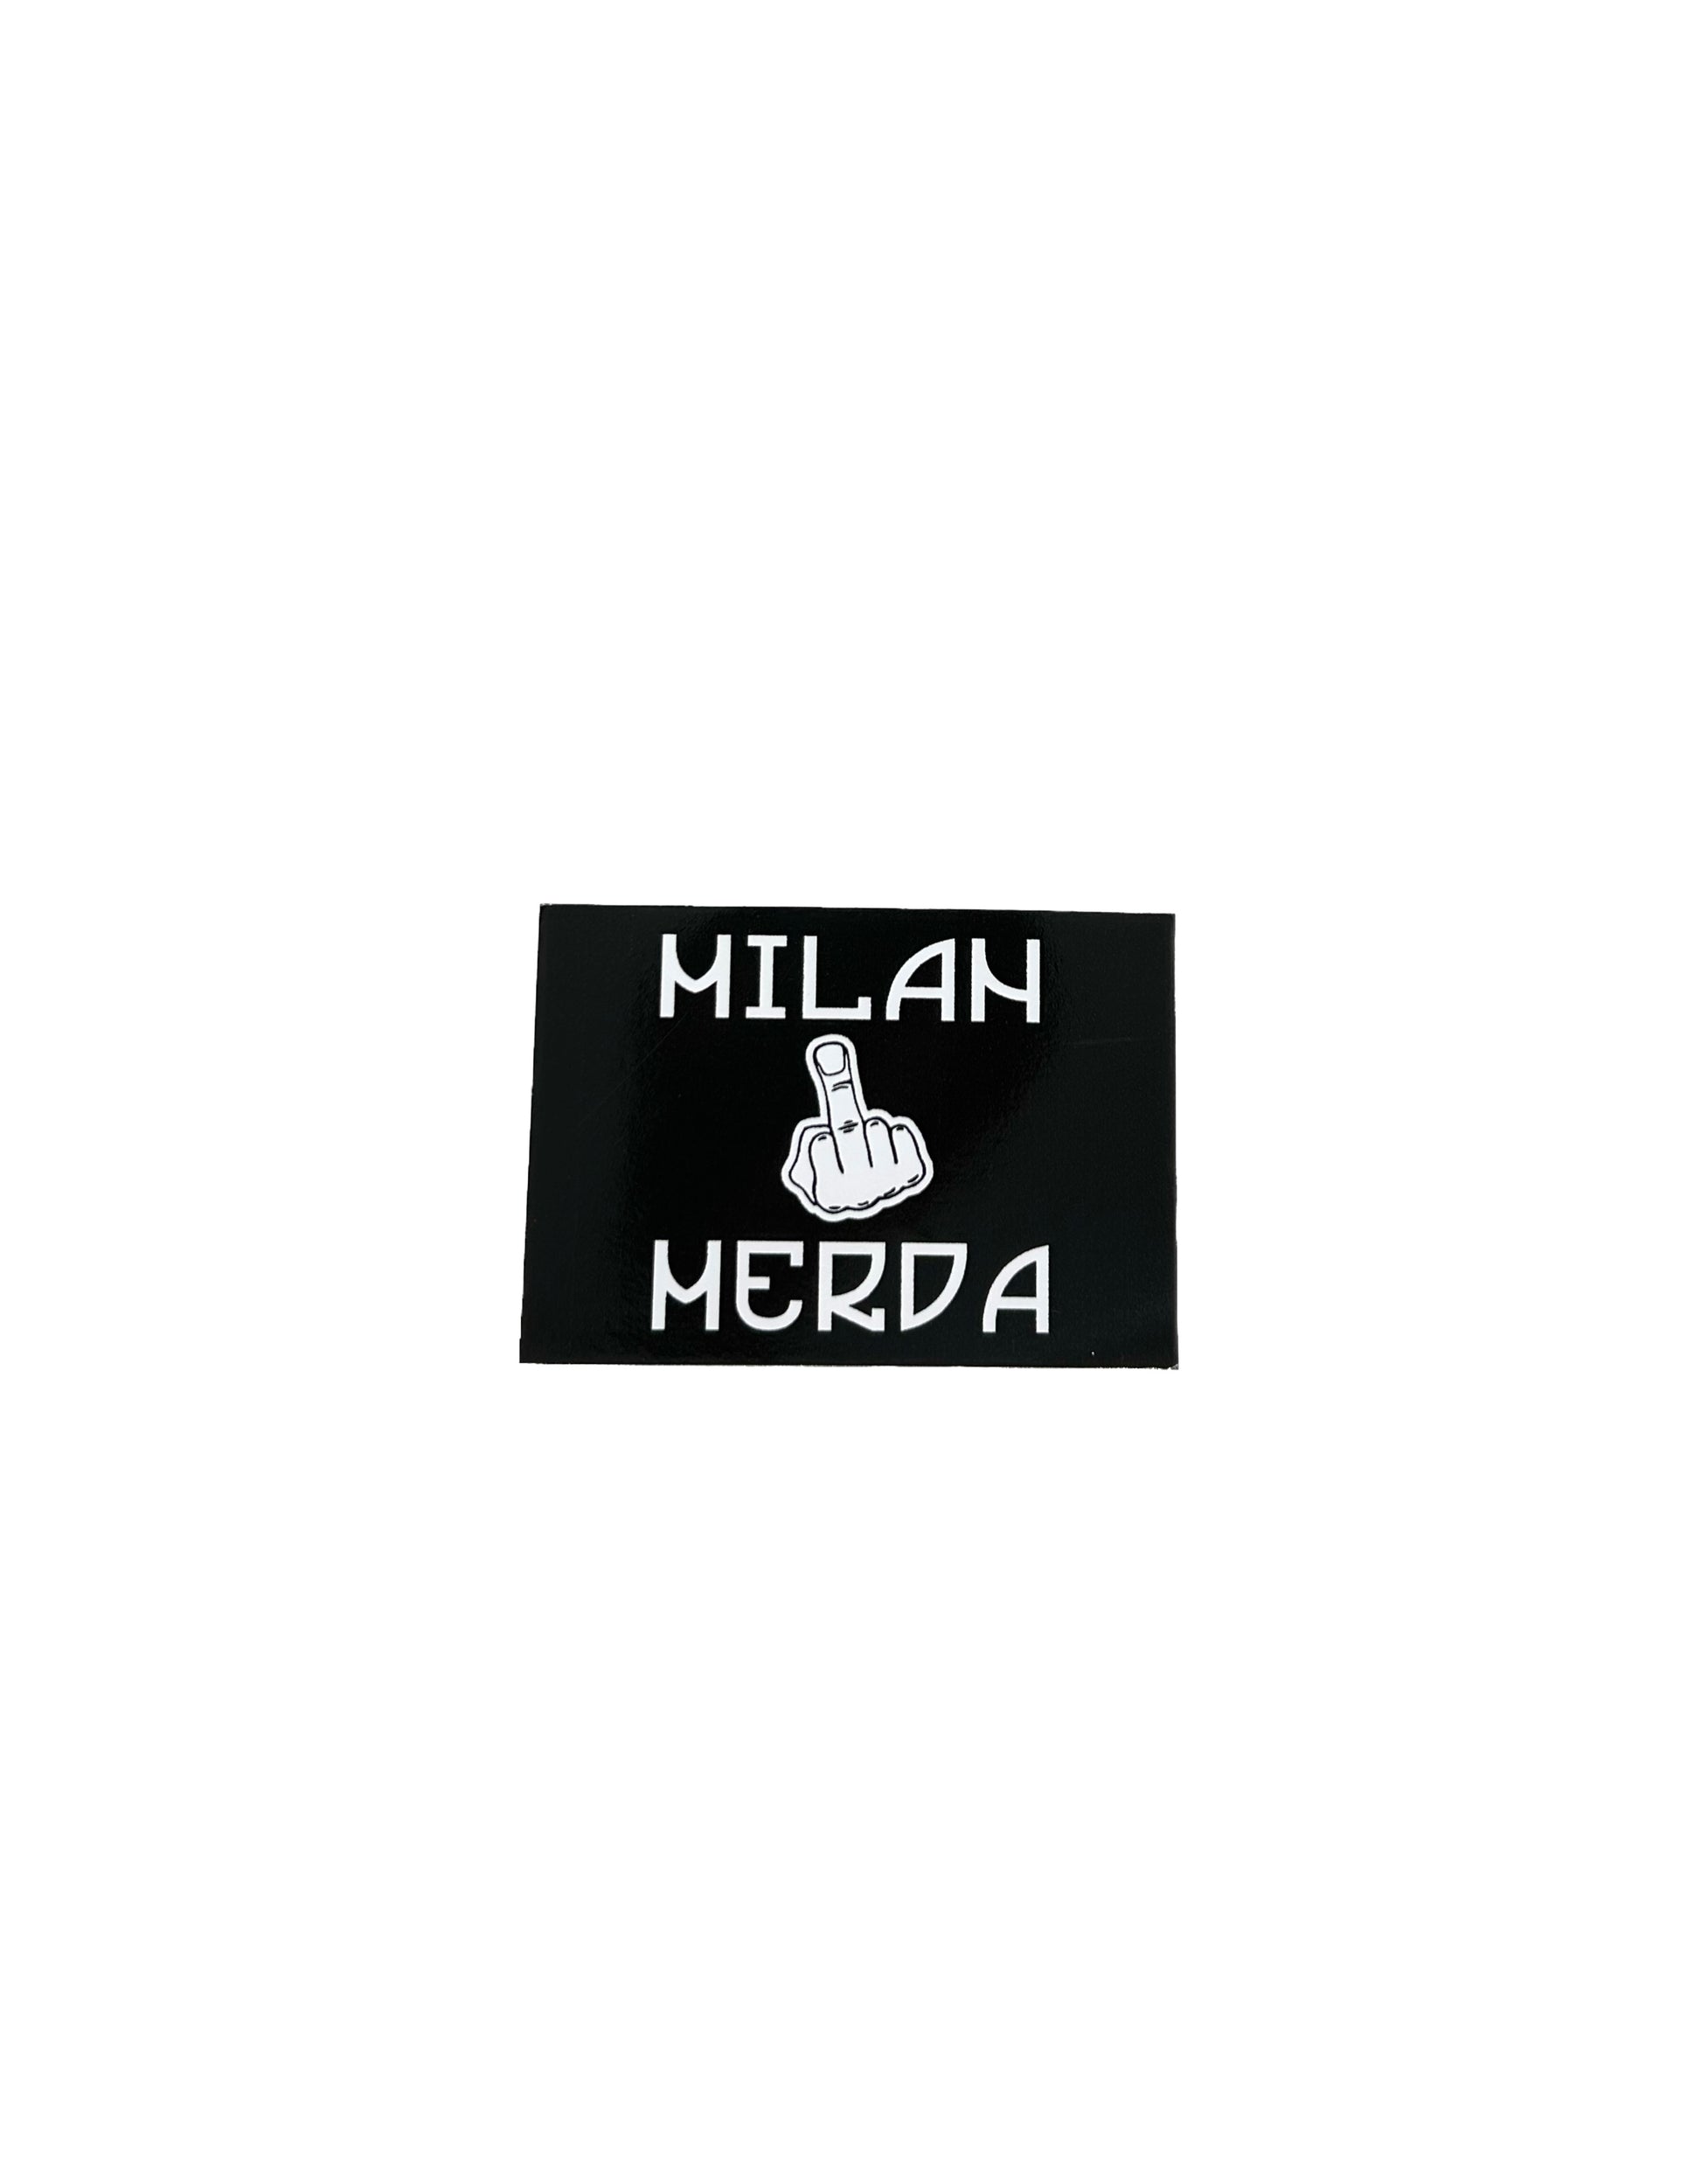 ADESIVO MILAN MERDA – forza napoli shop